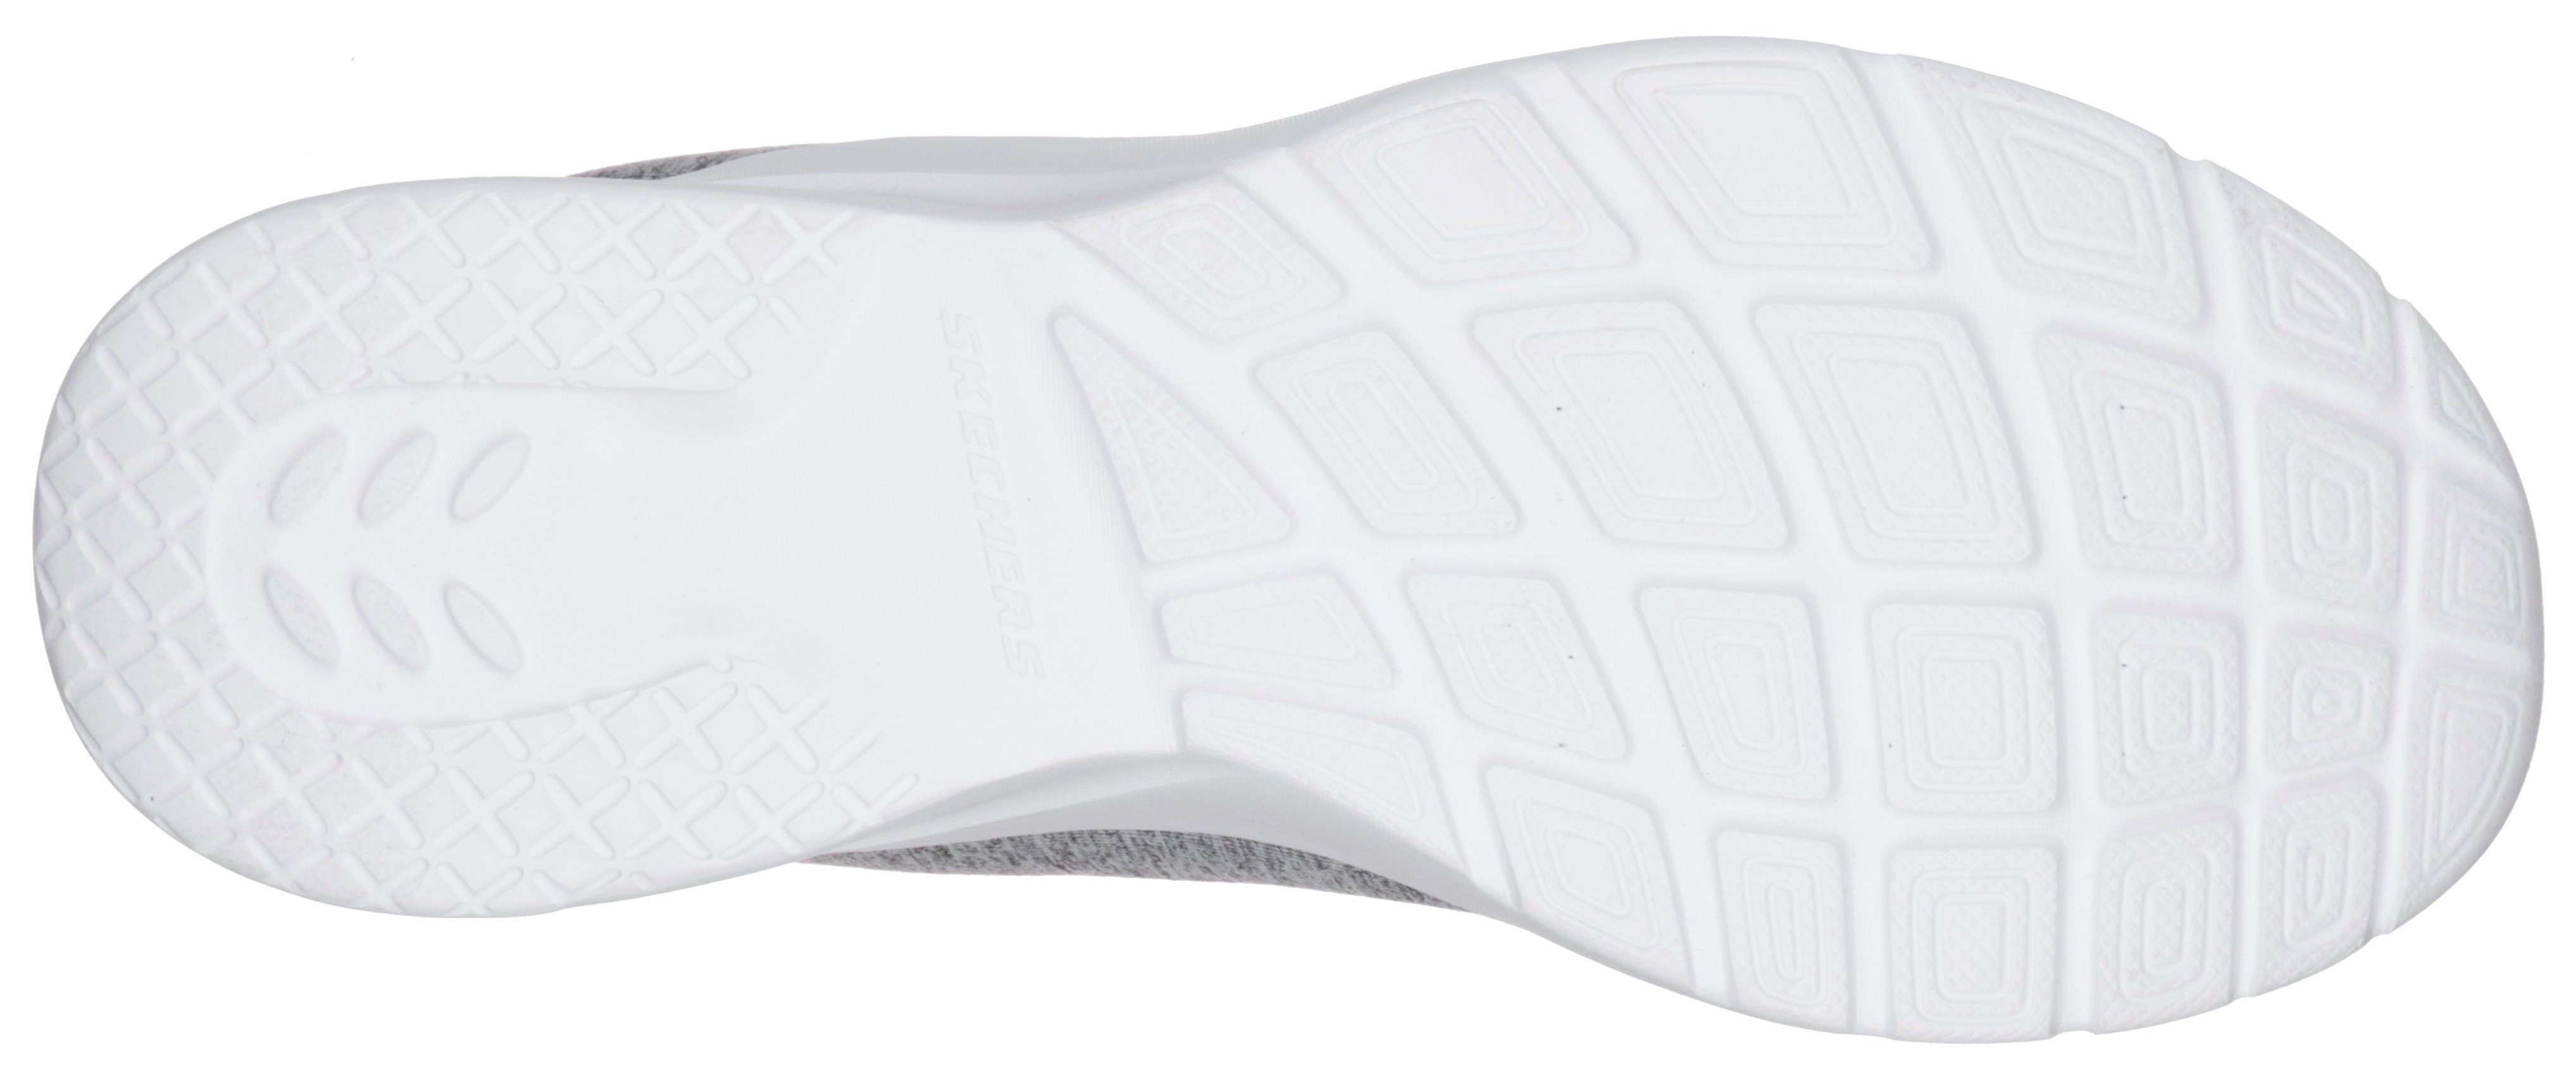 für A Slip-On Sneaker geeignet DYNAMIGHT Maschinenwäsche grau-mint FLASH 2.0-IN Skechers